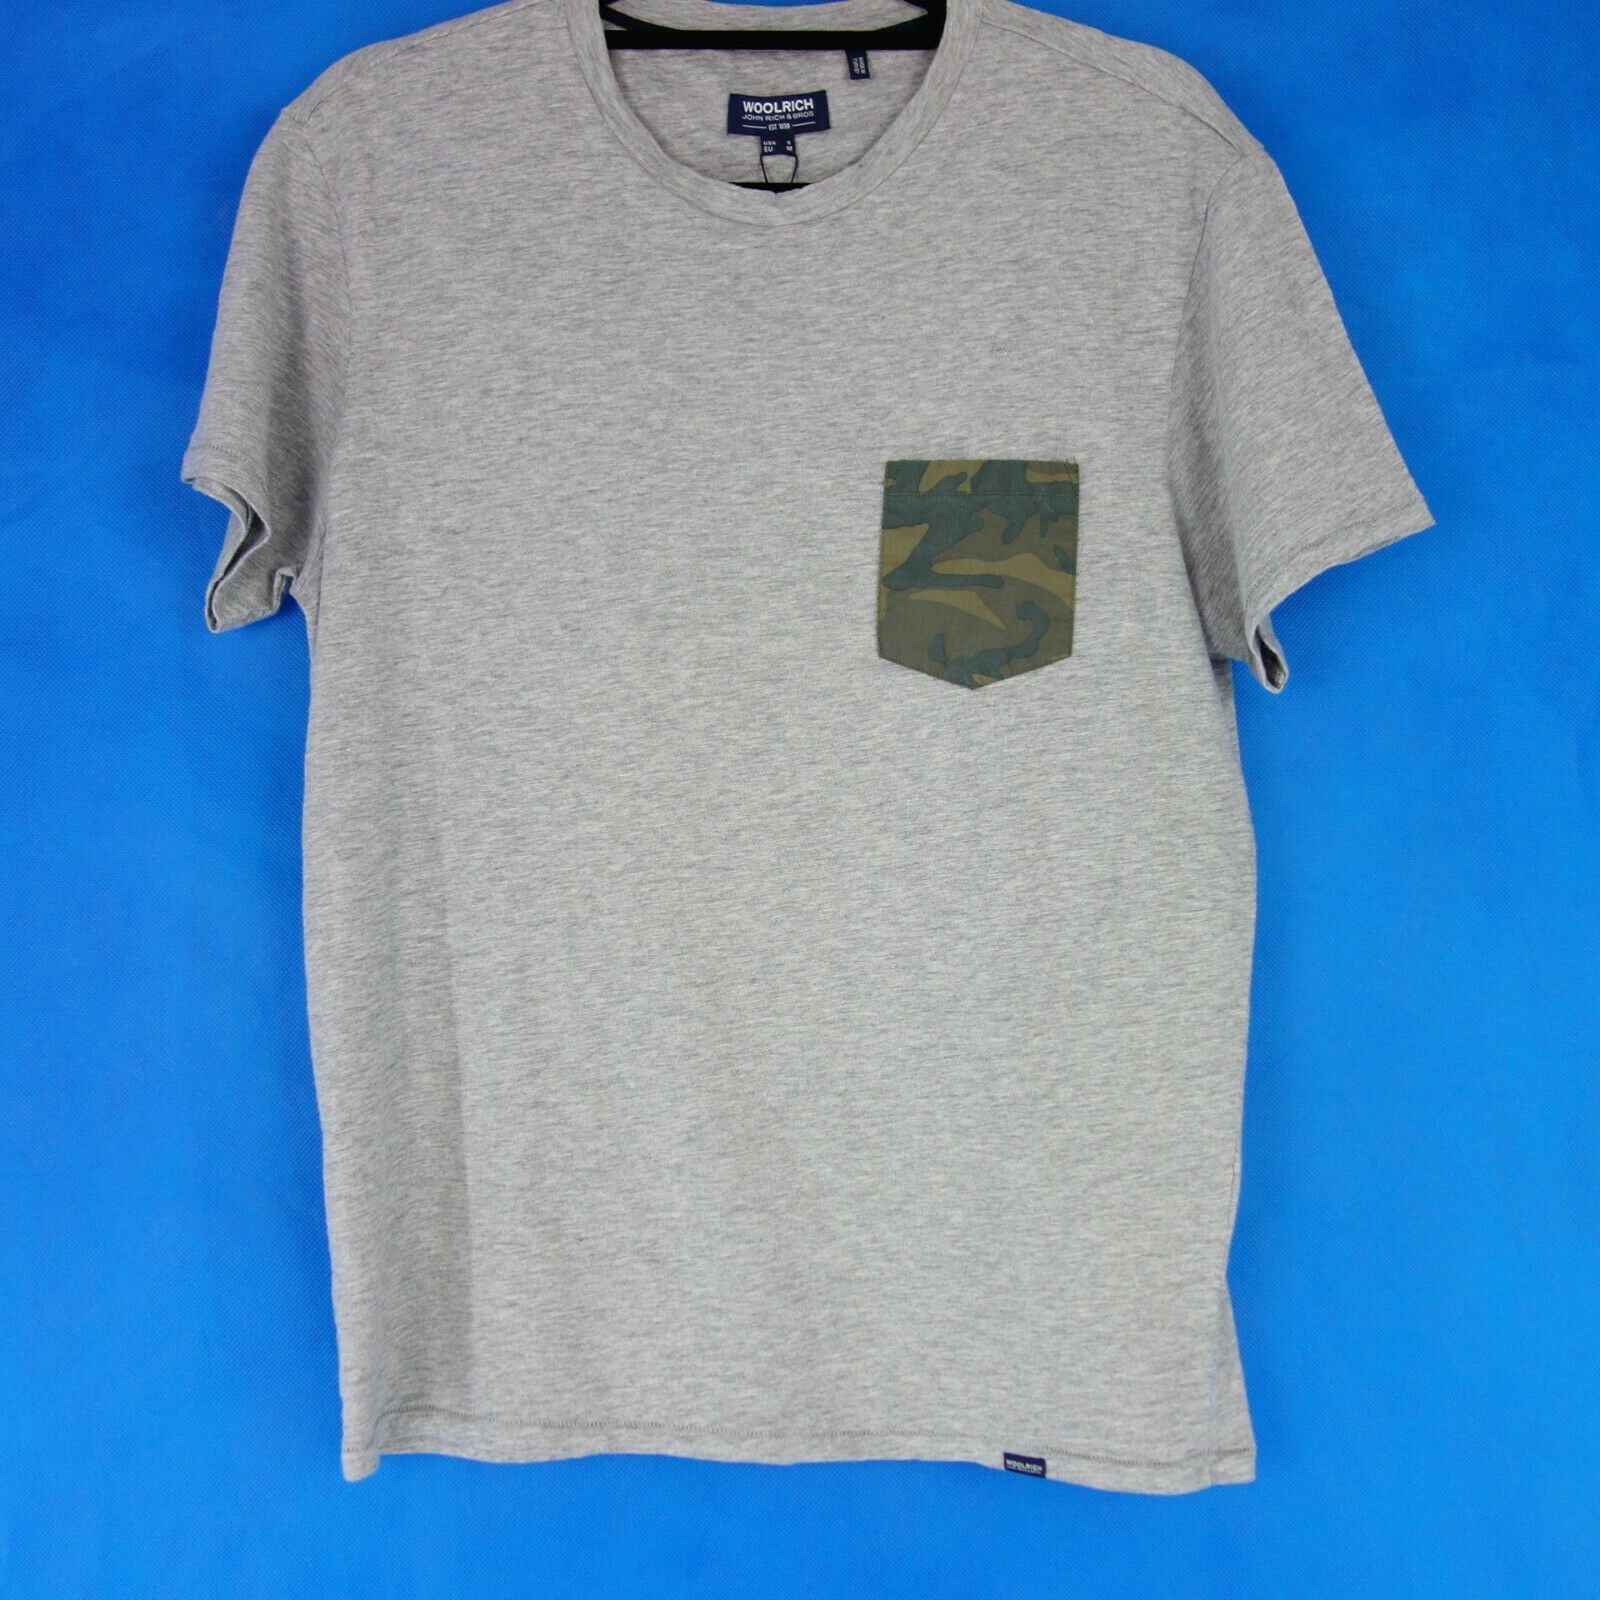 Woolrich Herren T Shirt Oberteil Grau Pocket Tee Camouflage Baumwolle Np 65 Neu - S